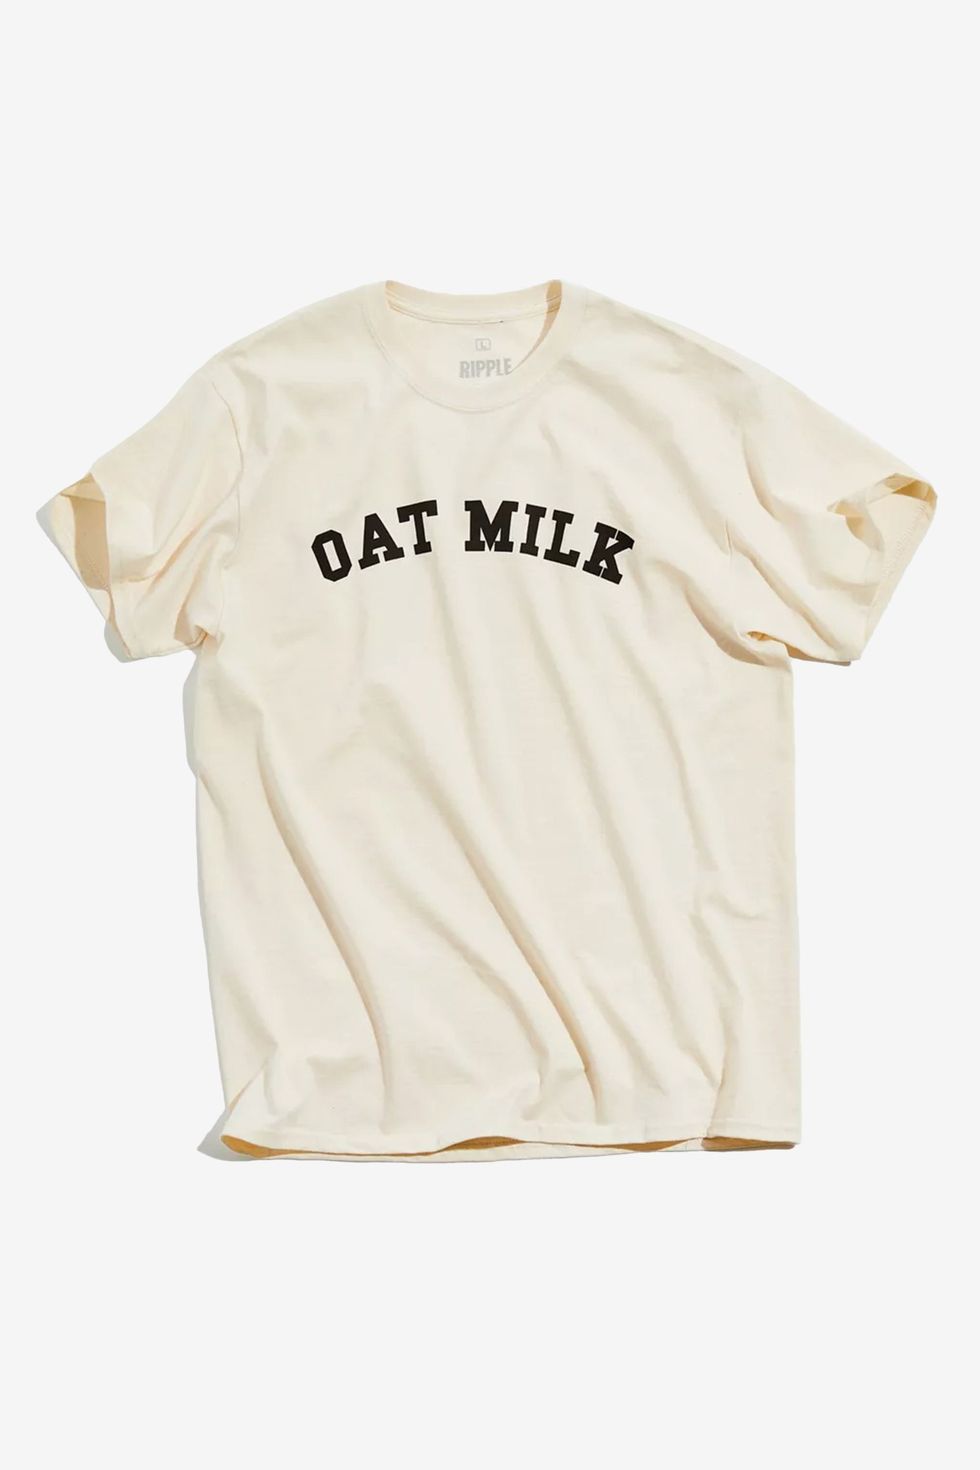 oat milk tea